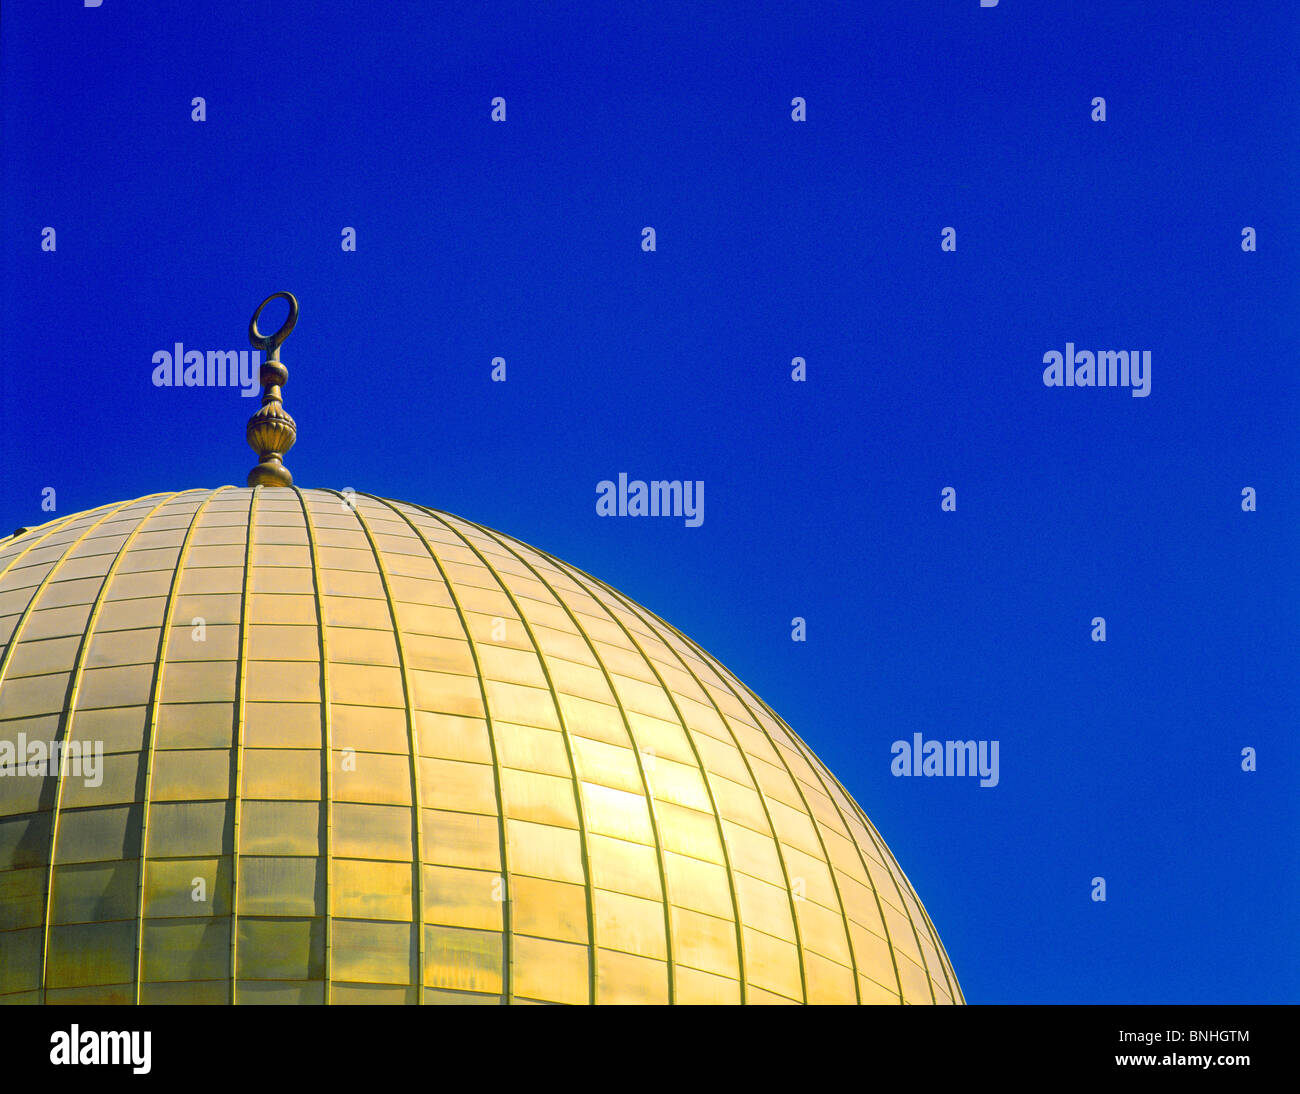 Israel, Jerusalén, la cúpula de la roca del monte del templo sagrado de la arquitectura Islámica El Islam detalle techo dorado blue sky dome Foto de stock